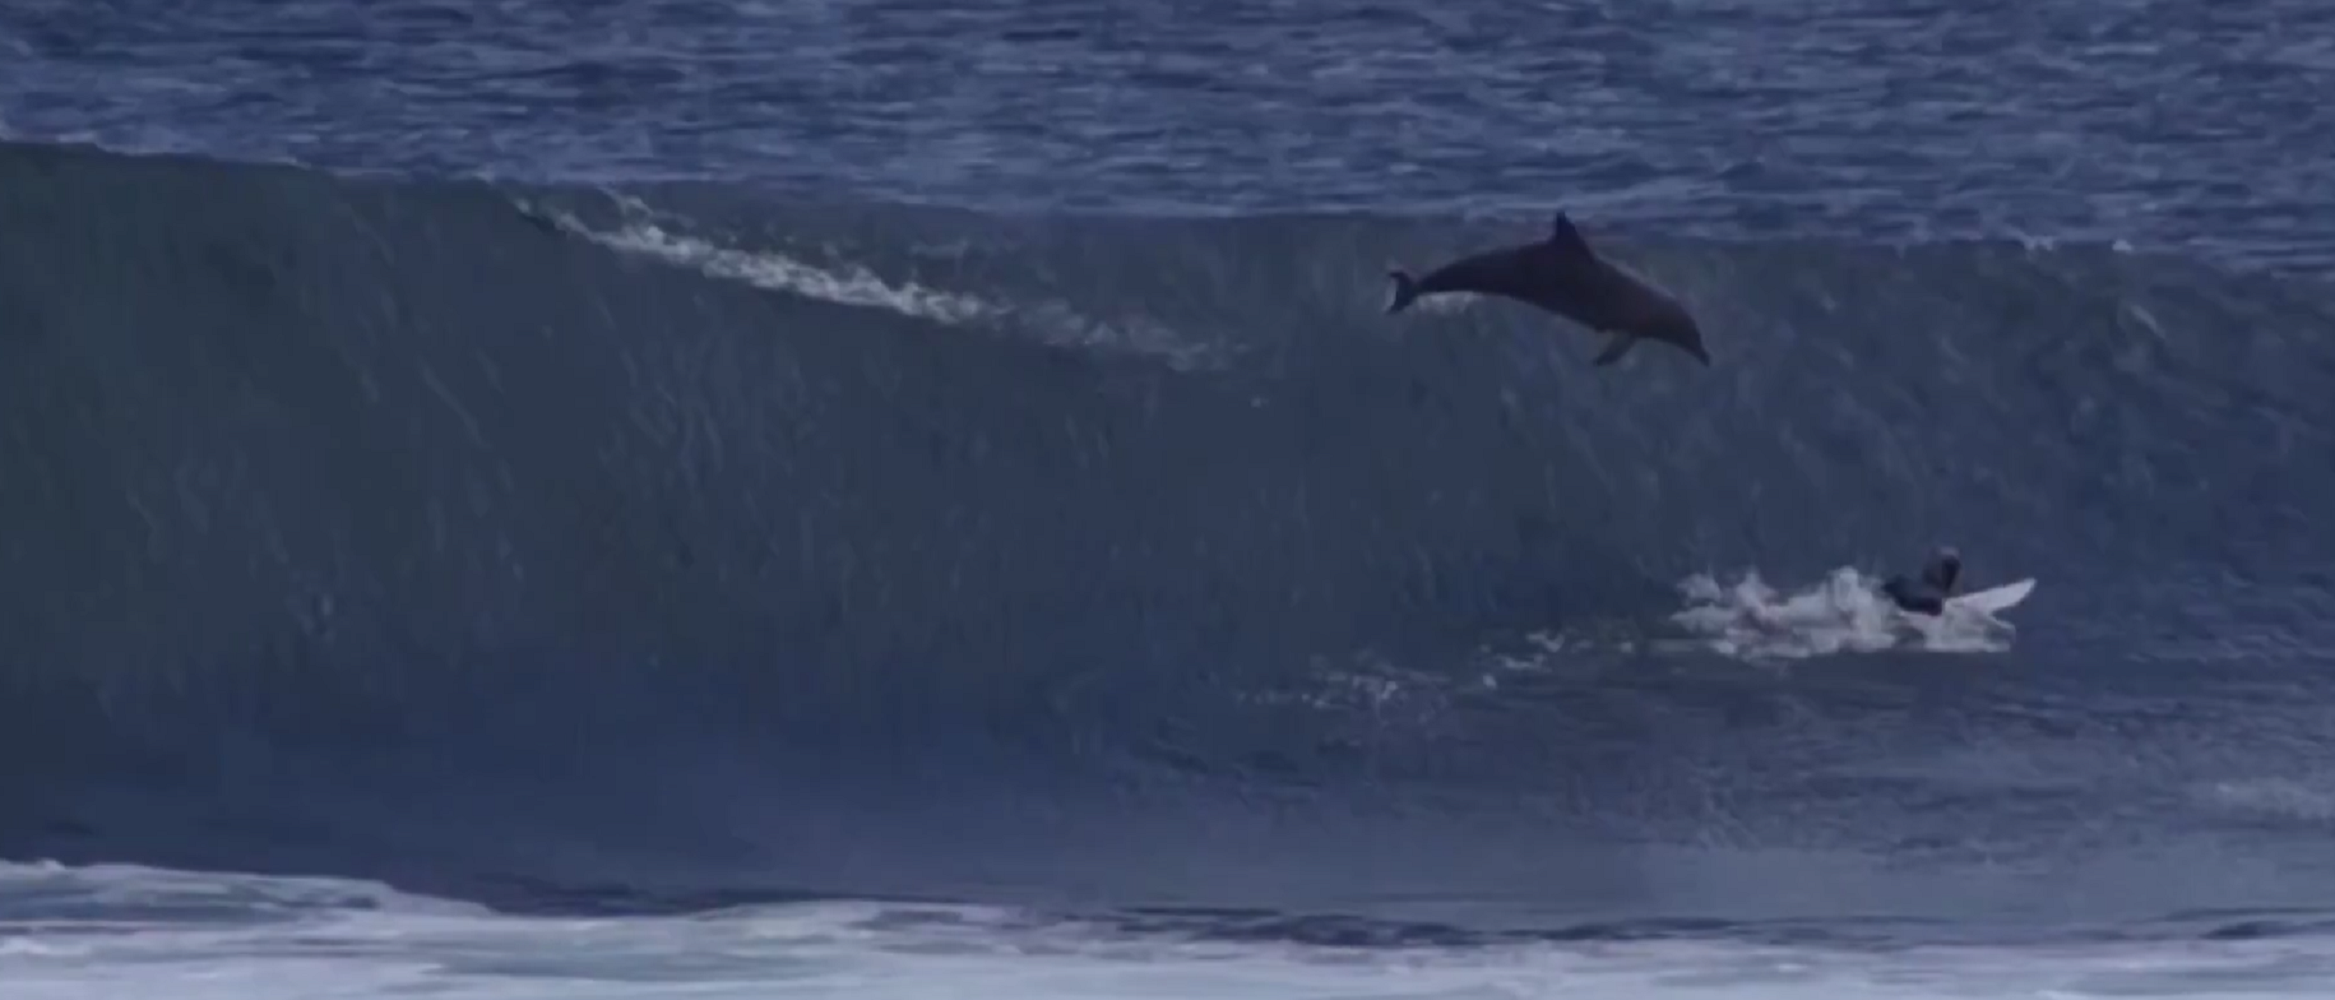 Un dofí salta i cau damunt d’un jove campió de surf